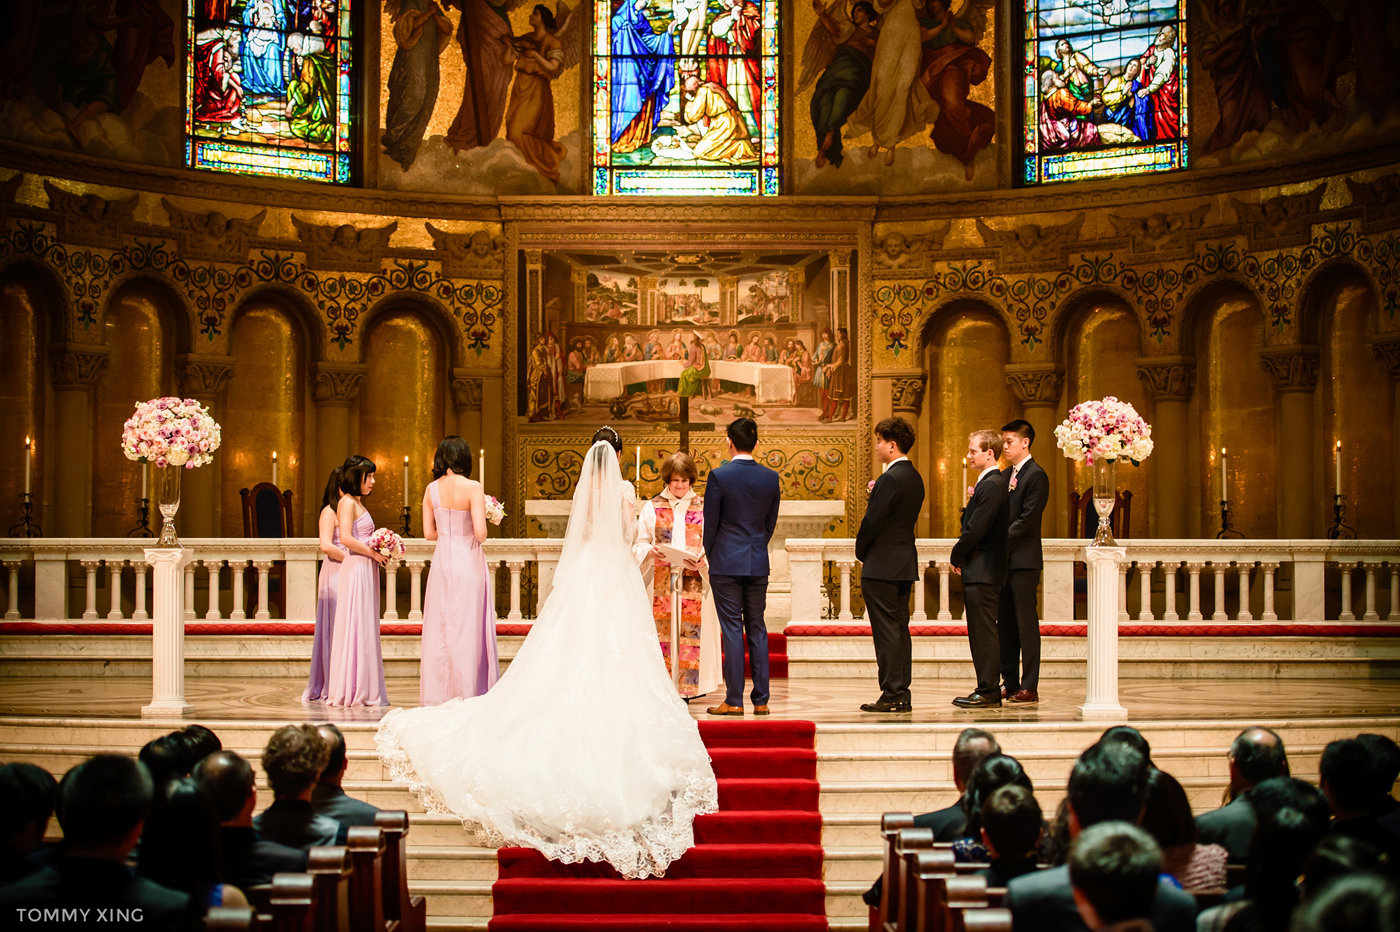 stanford memorial church wedding 旧金山湾区斯坦福教堂婚礼 Tommy Xing Photography 065.jpg